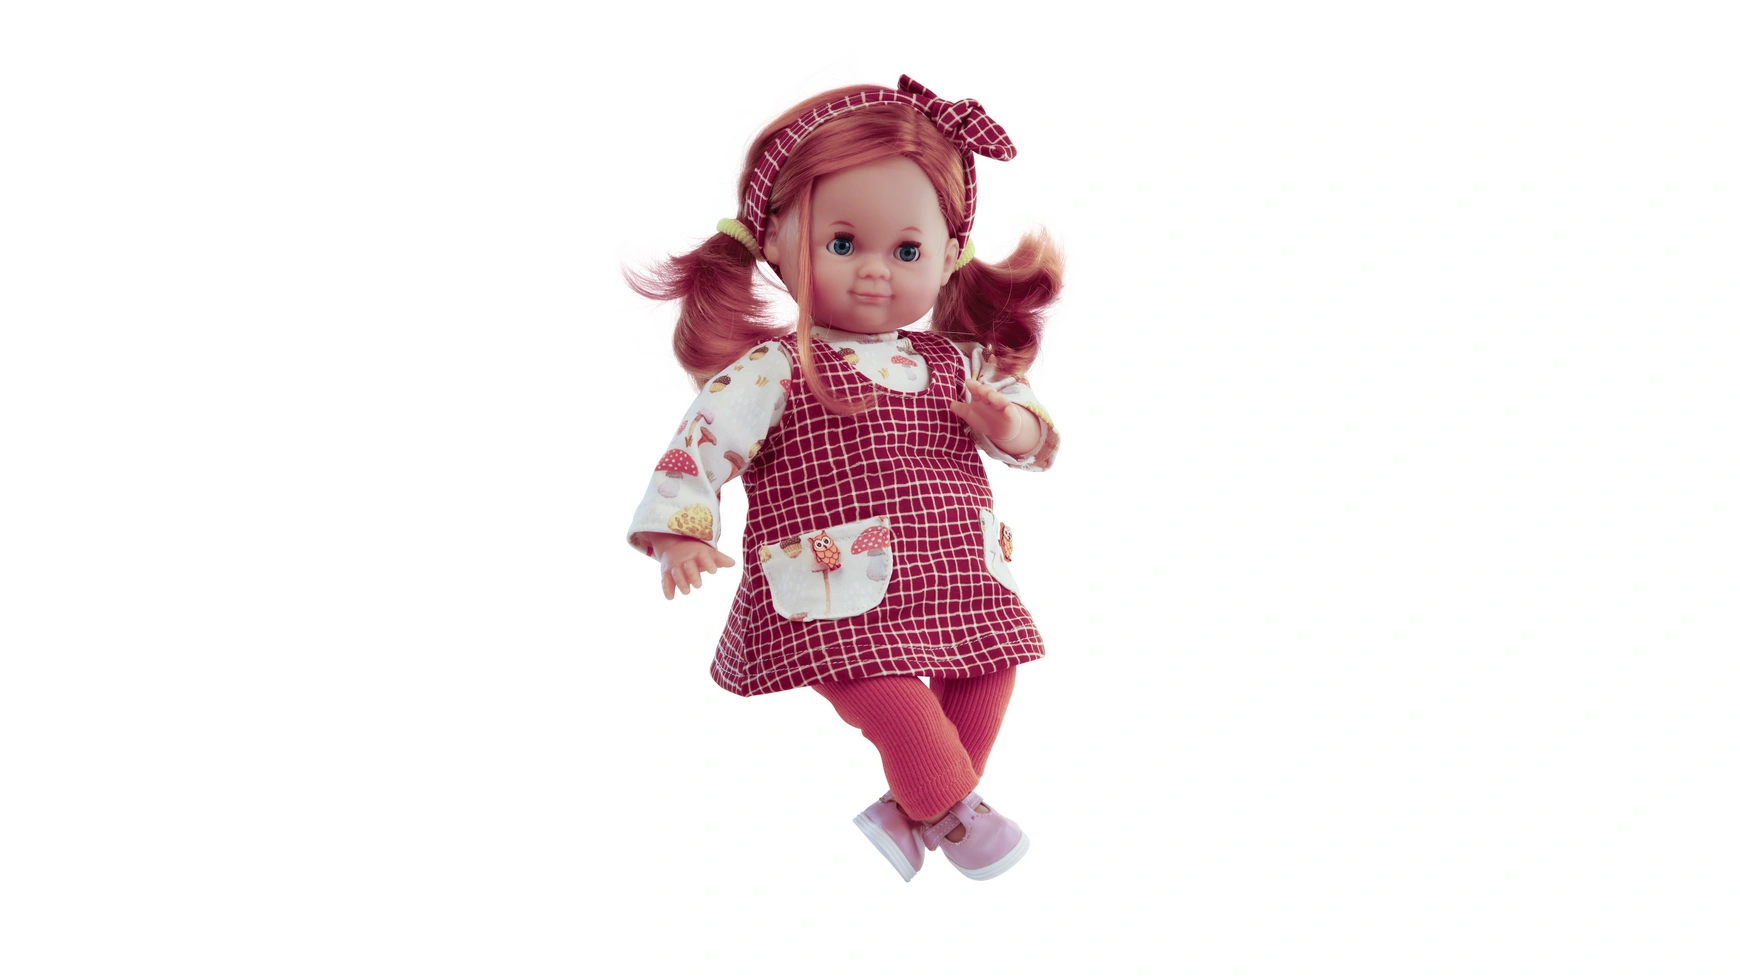 Schildkroet-Puppen Кукла Шлюммерле 32 см рыжие волосы, спящие голубые глаза, одежда гриб